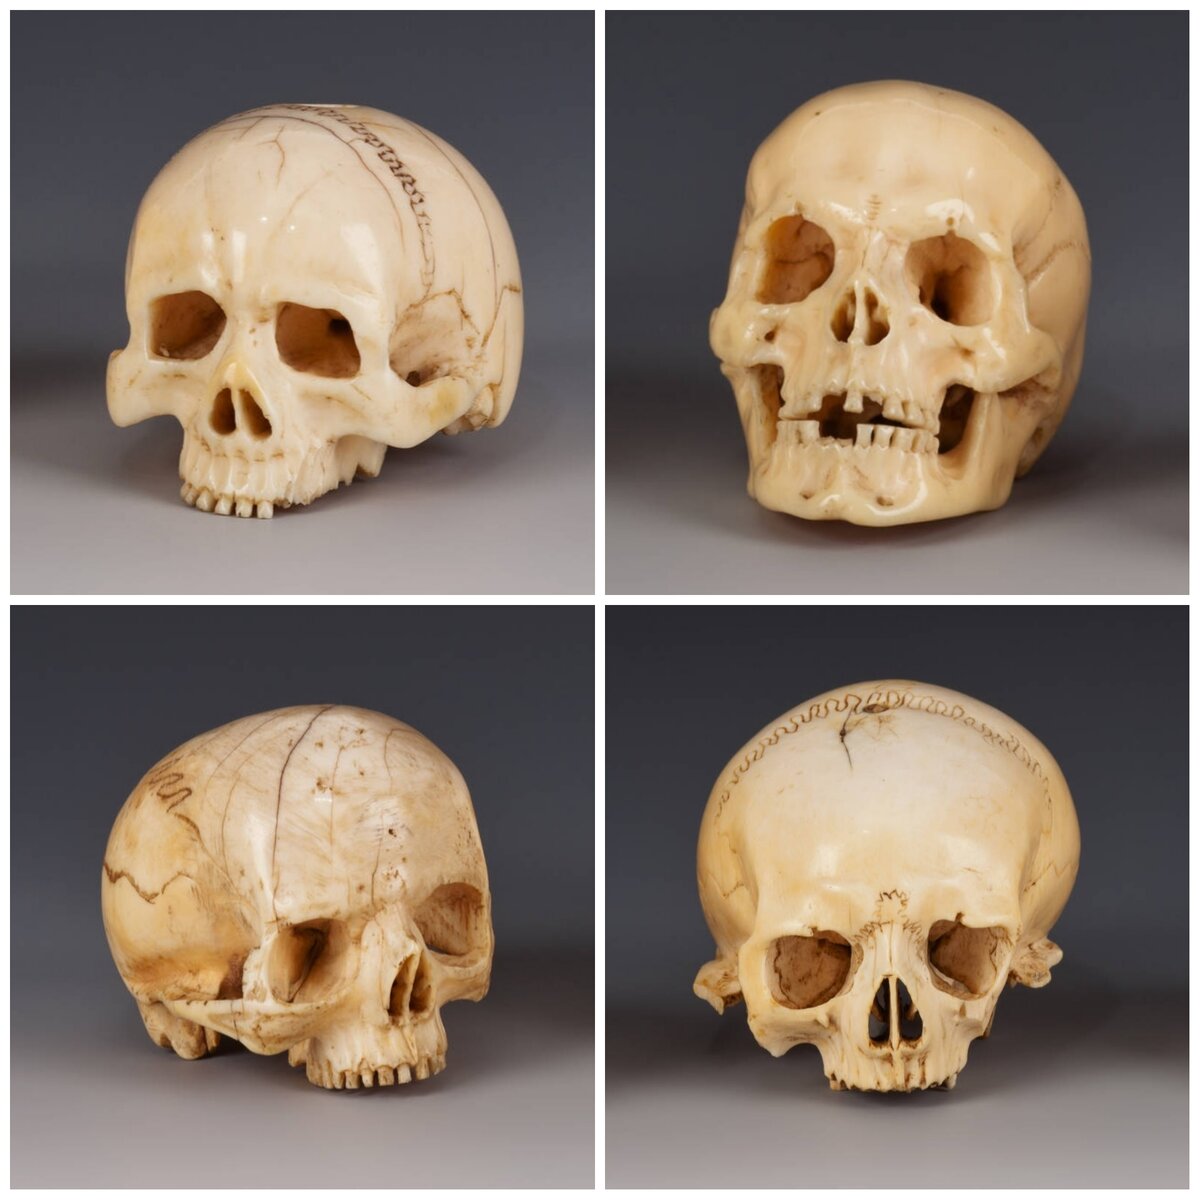 Резные черепа из коллекции Венского музея истории искусств. Размеры порядка 6 см, Германия, 16-27 вв. Анатомически точно вырезанный череп мог служить экспонатом коллекции. В то же время он свидетельствует о виртуозности и артистизме мастера в отношении точного воспроизведения человеческого черепа